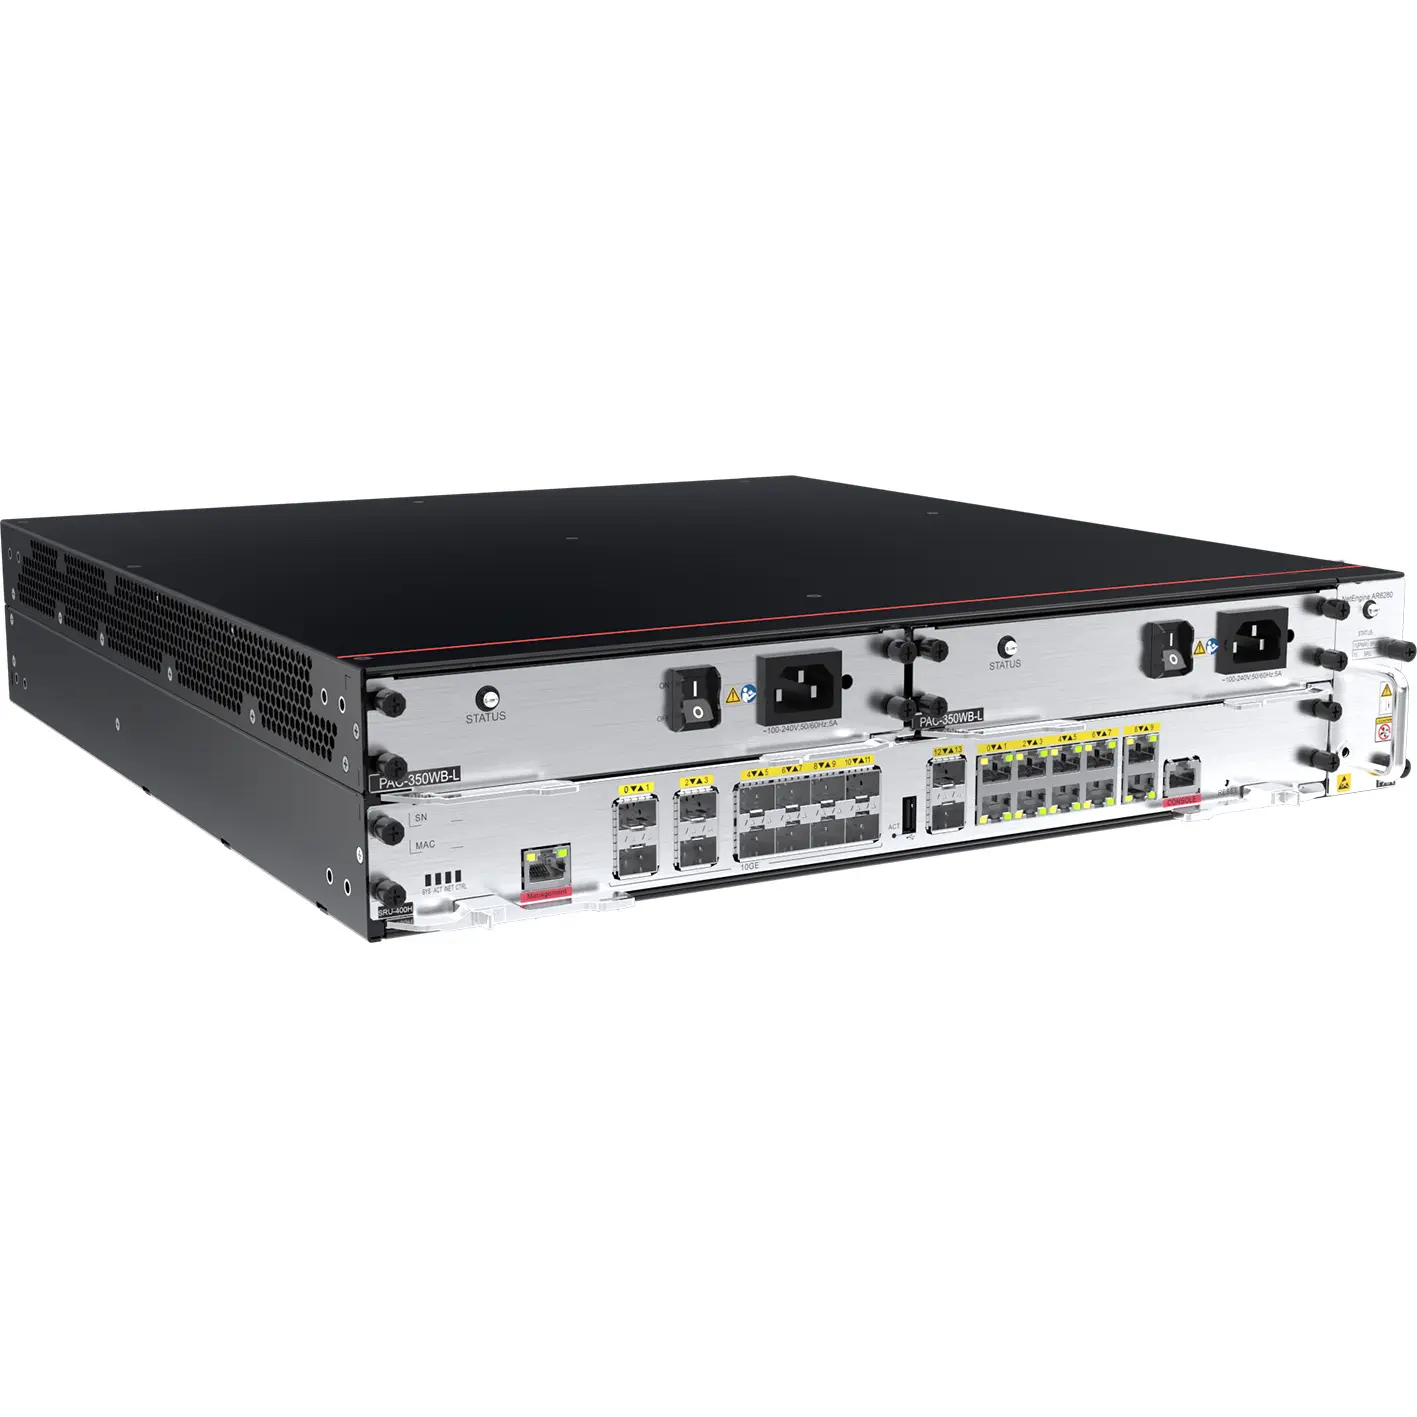 جهاز توجيه شبكات الجيل الرابع المخصص 300 ميجا بايت/ثانية MPLS VPN VoIP NetEngine AR6000 Series AR6280